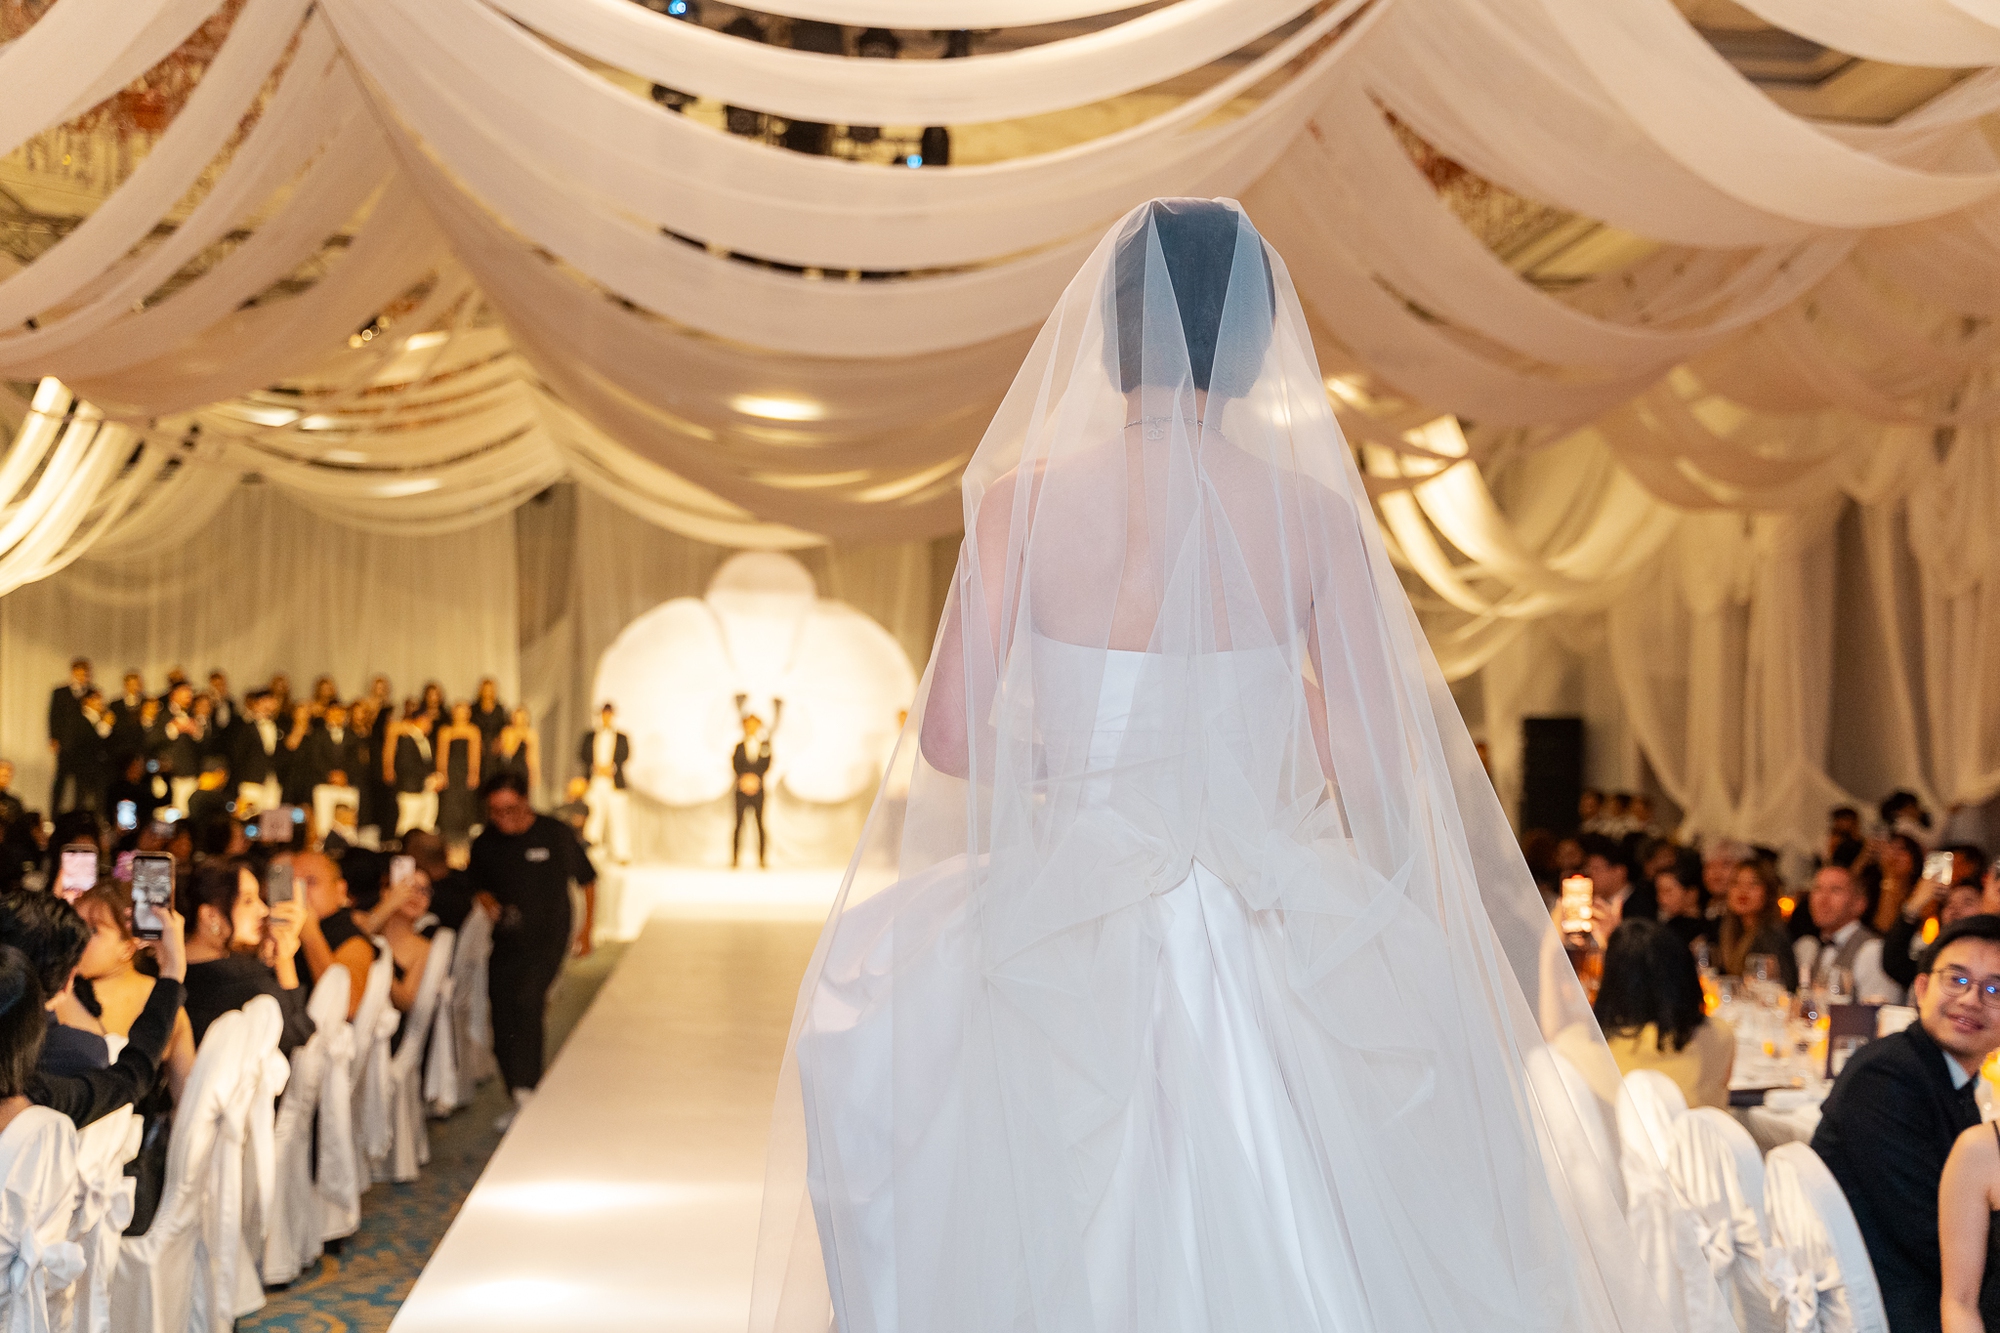 Đám cưới siêu mẫu Tuyết Lan: Cô dâu diện váy cưới gợi cảm, khoảnh khắc trên lễ đường cùng chú rể gây xúc động- Ảnh 1.